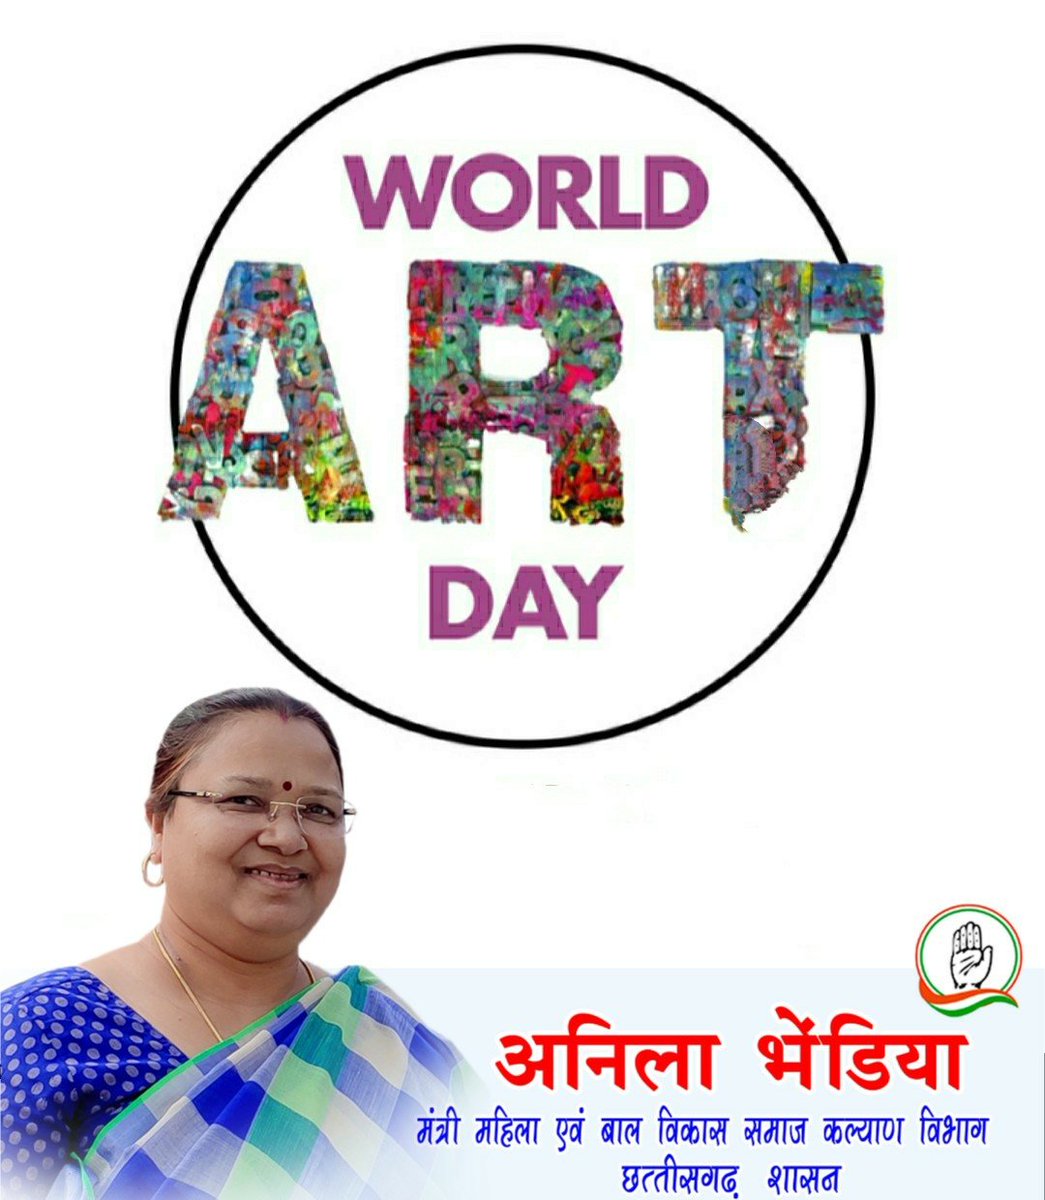 आप सभी को विश्व कला दिवस की हार्दिक शुभकामनाएं।।

#विश्वकलादिवस
#worldArtday